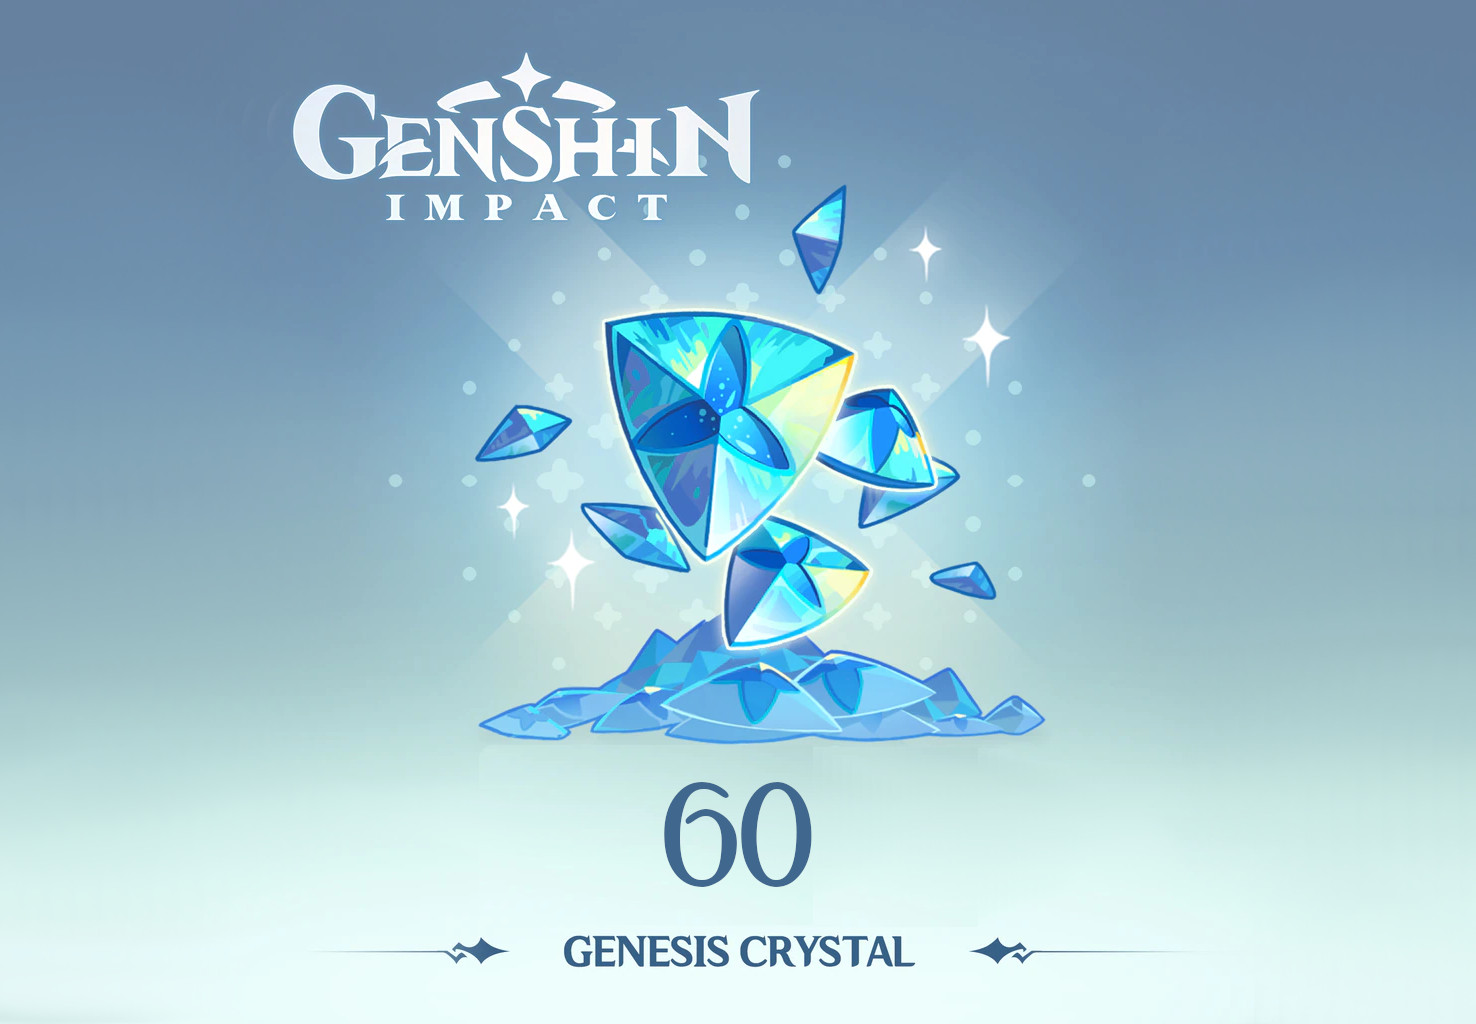 [$ 1.32] Genshin Impact - 60 Genesis Crystals Reidos Voucher